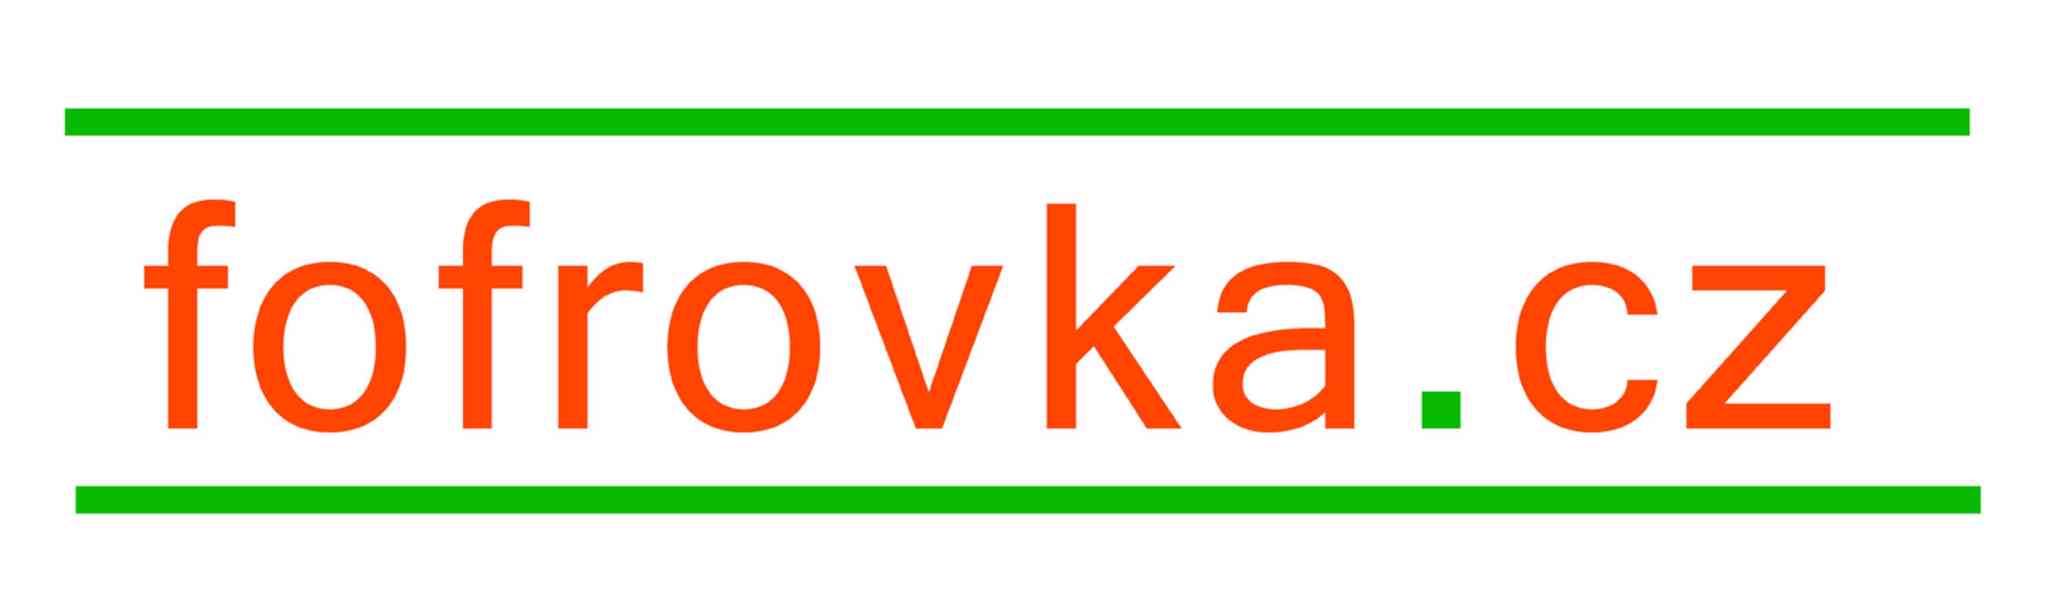 fofrovka.cz - nejschvalovanější půjčka ihned - foto 1